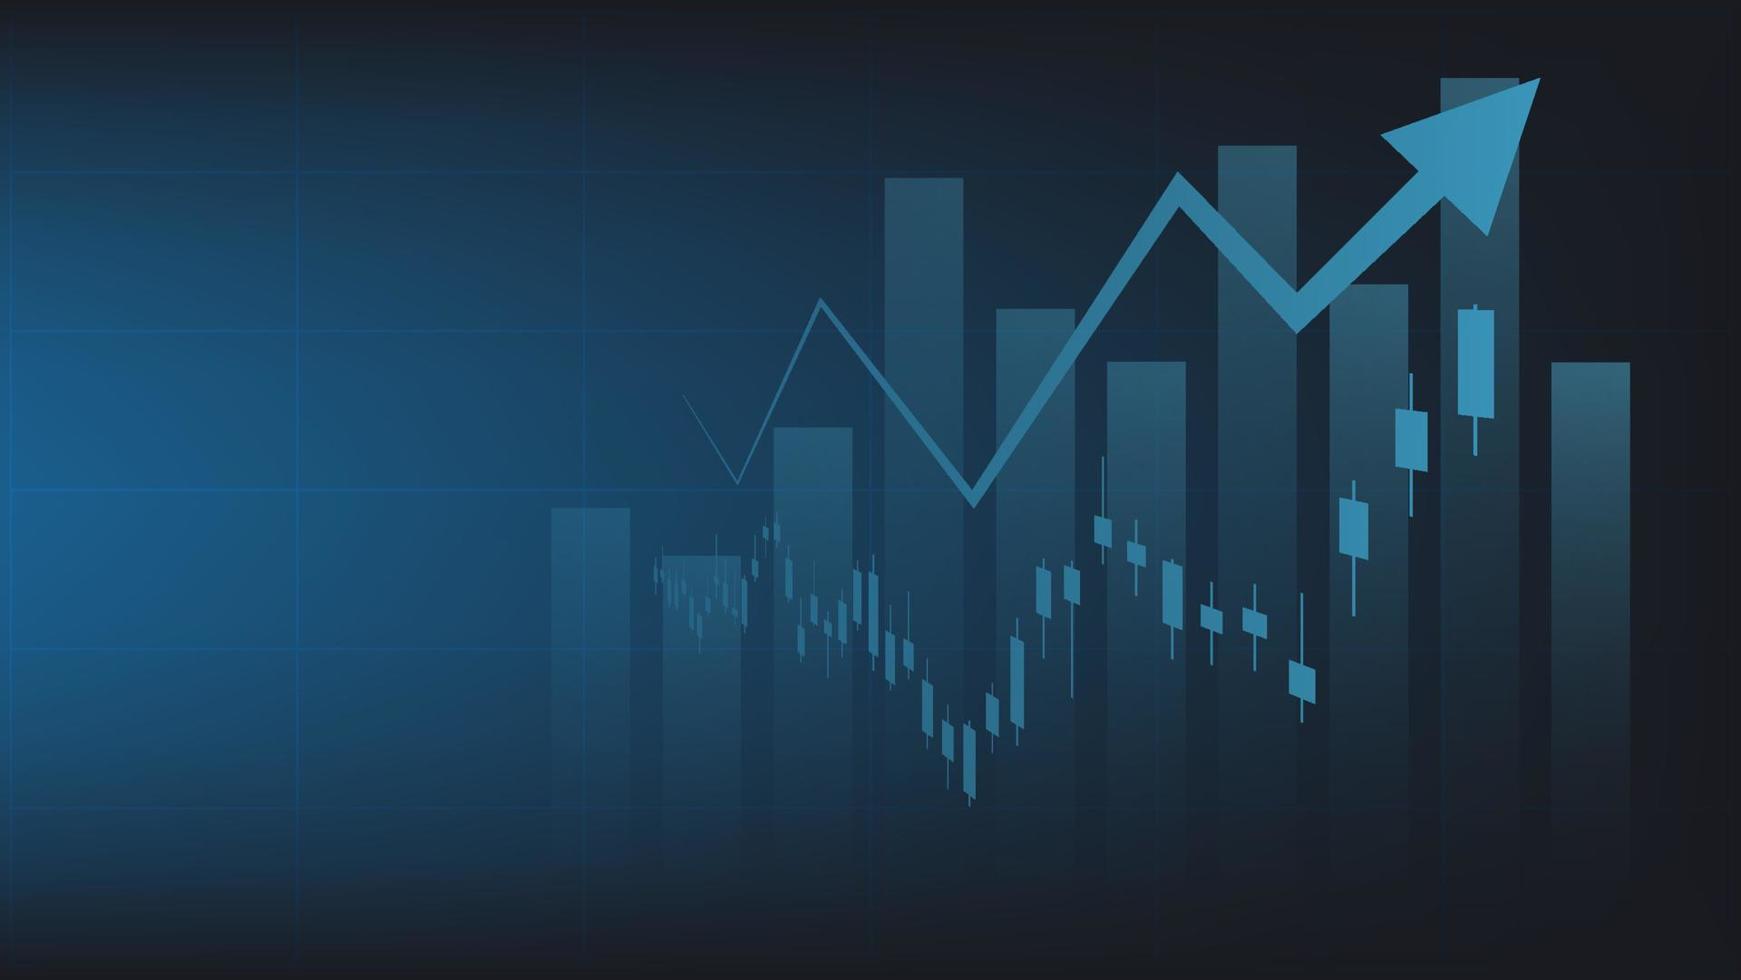 economie situatie concept. financieel bedrijf statistieken met bar diagram en kandelaar tabel tonen voorraad markt prijs en valuta uitwisseling Aan blauw achtergrond vector